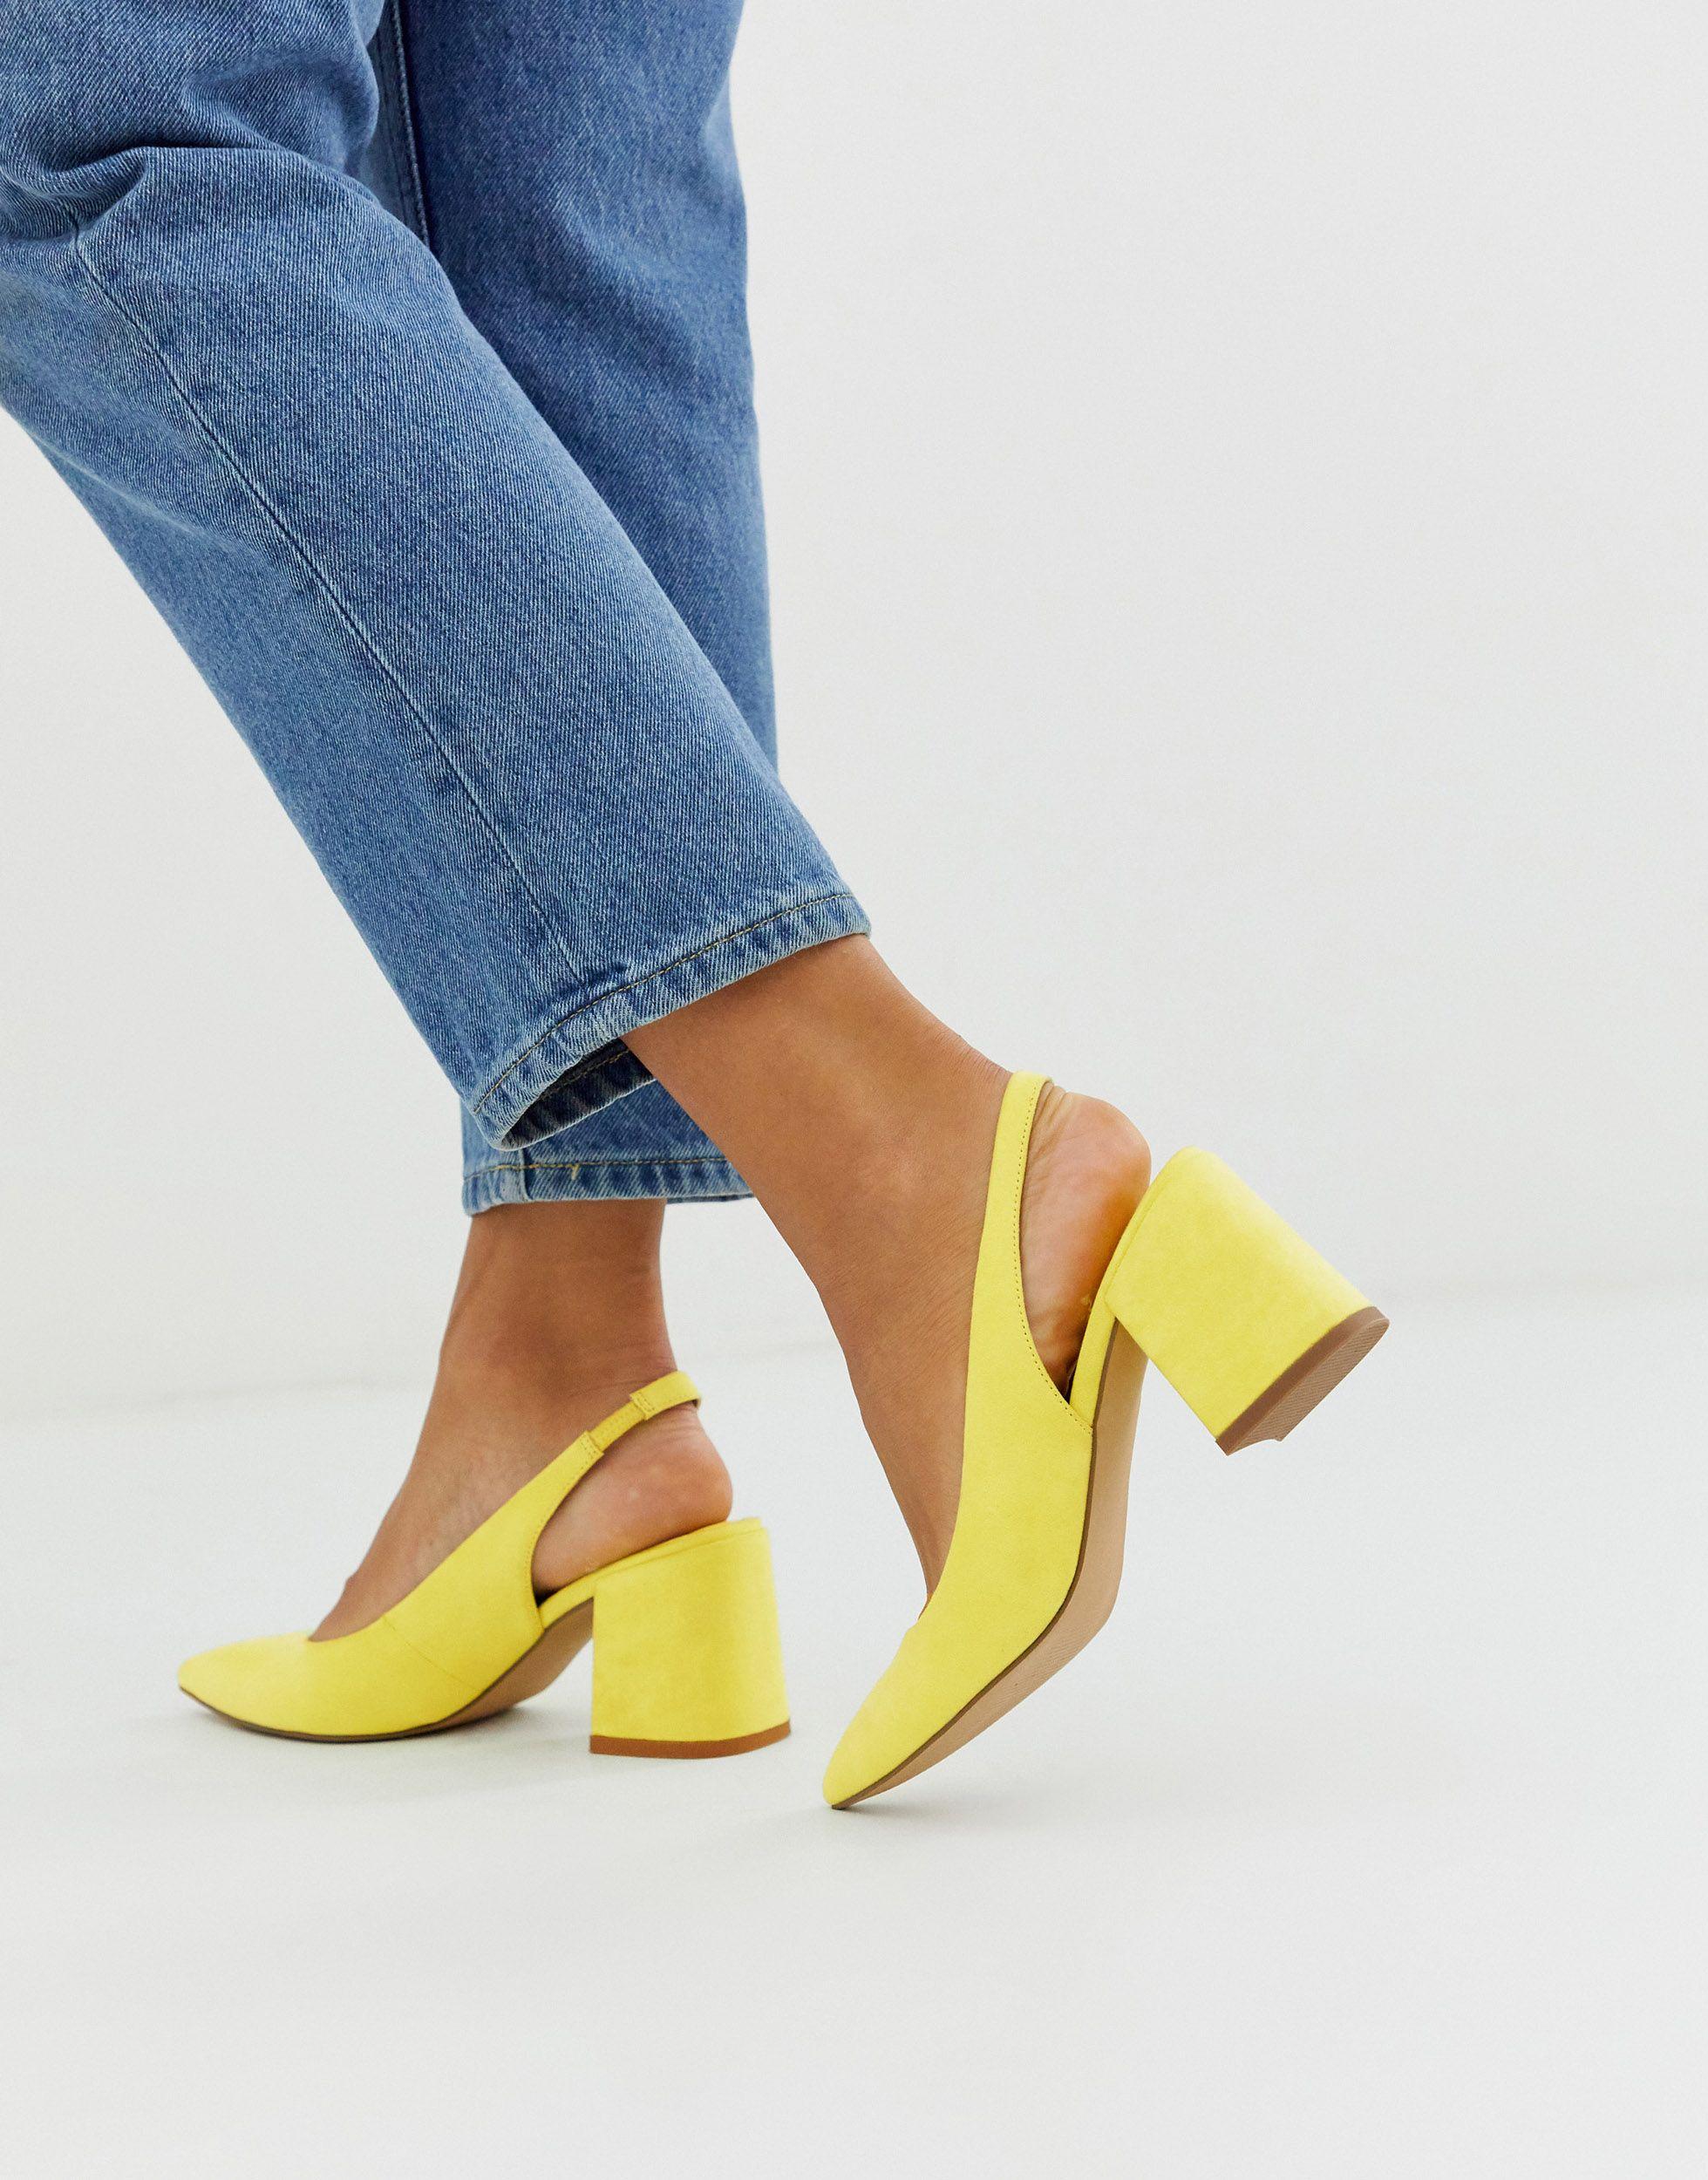 Туфли желтые купить. Желтые туфли. Туфли желтые женские. Жёлтые туфли на каблуке. Желтые туфли на шпильке.